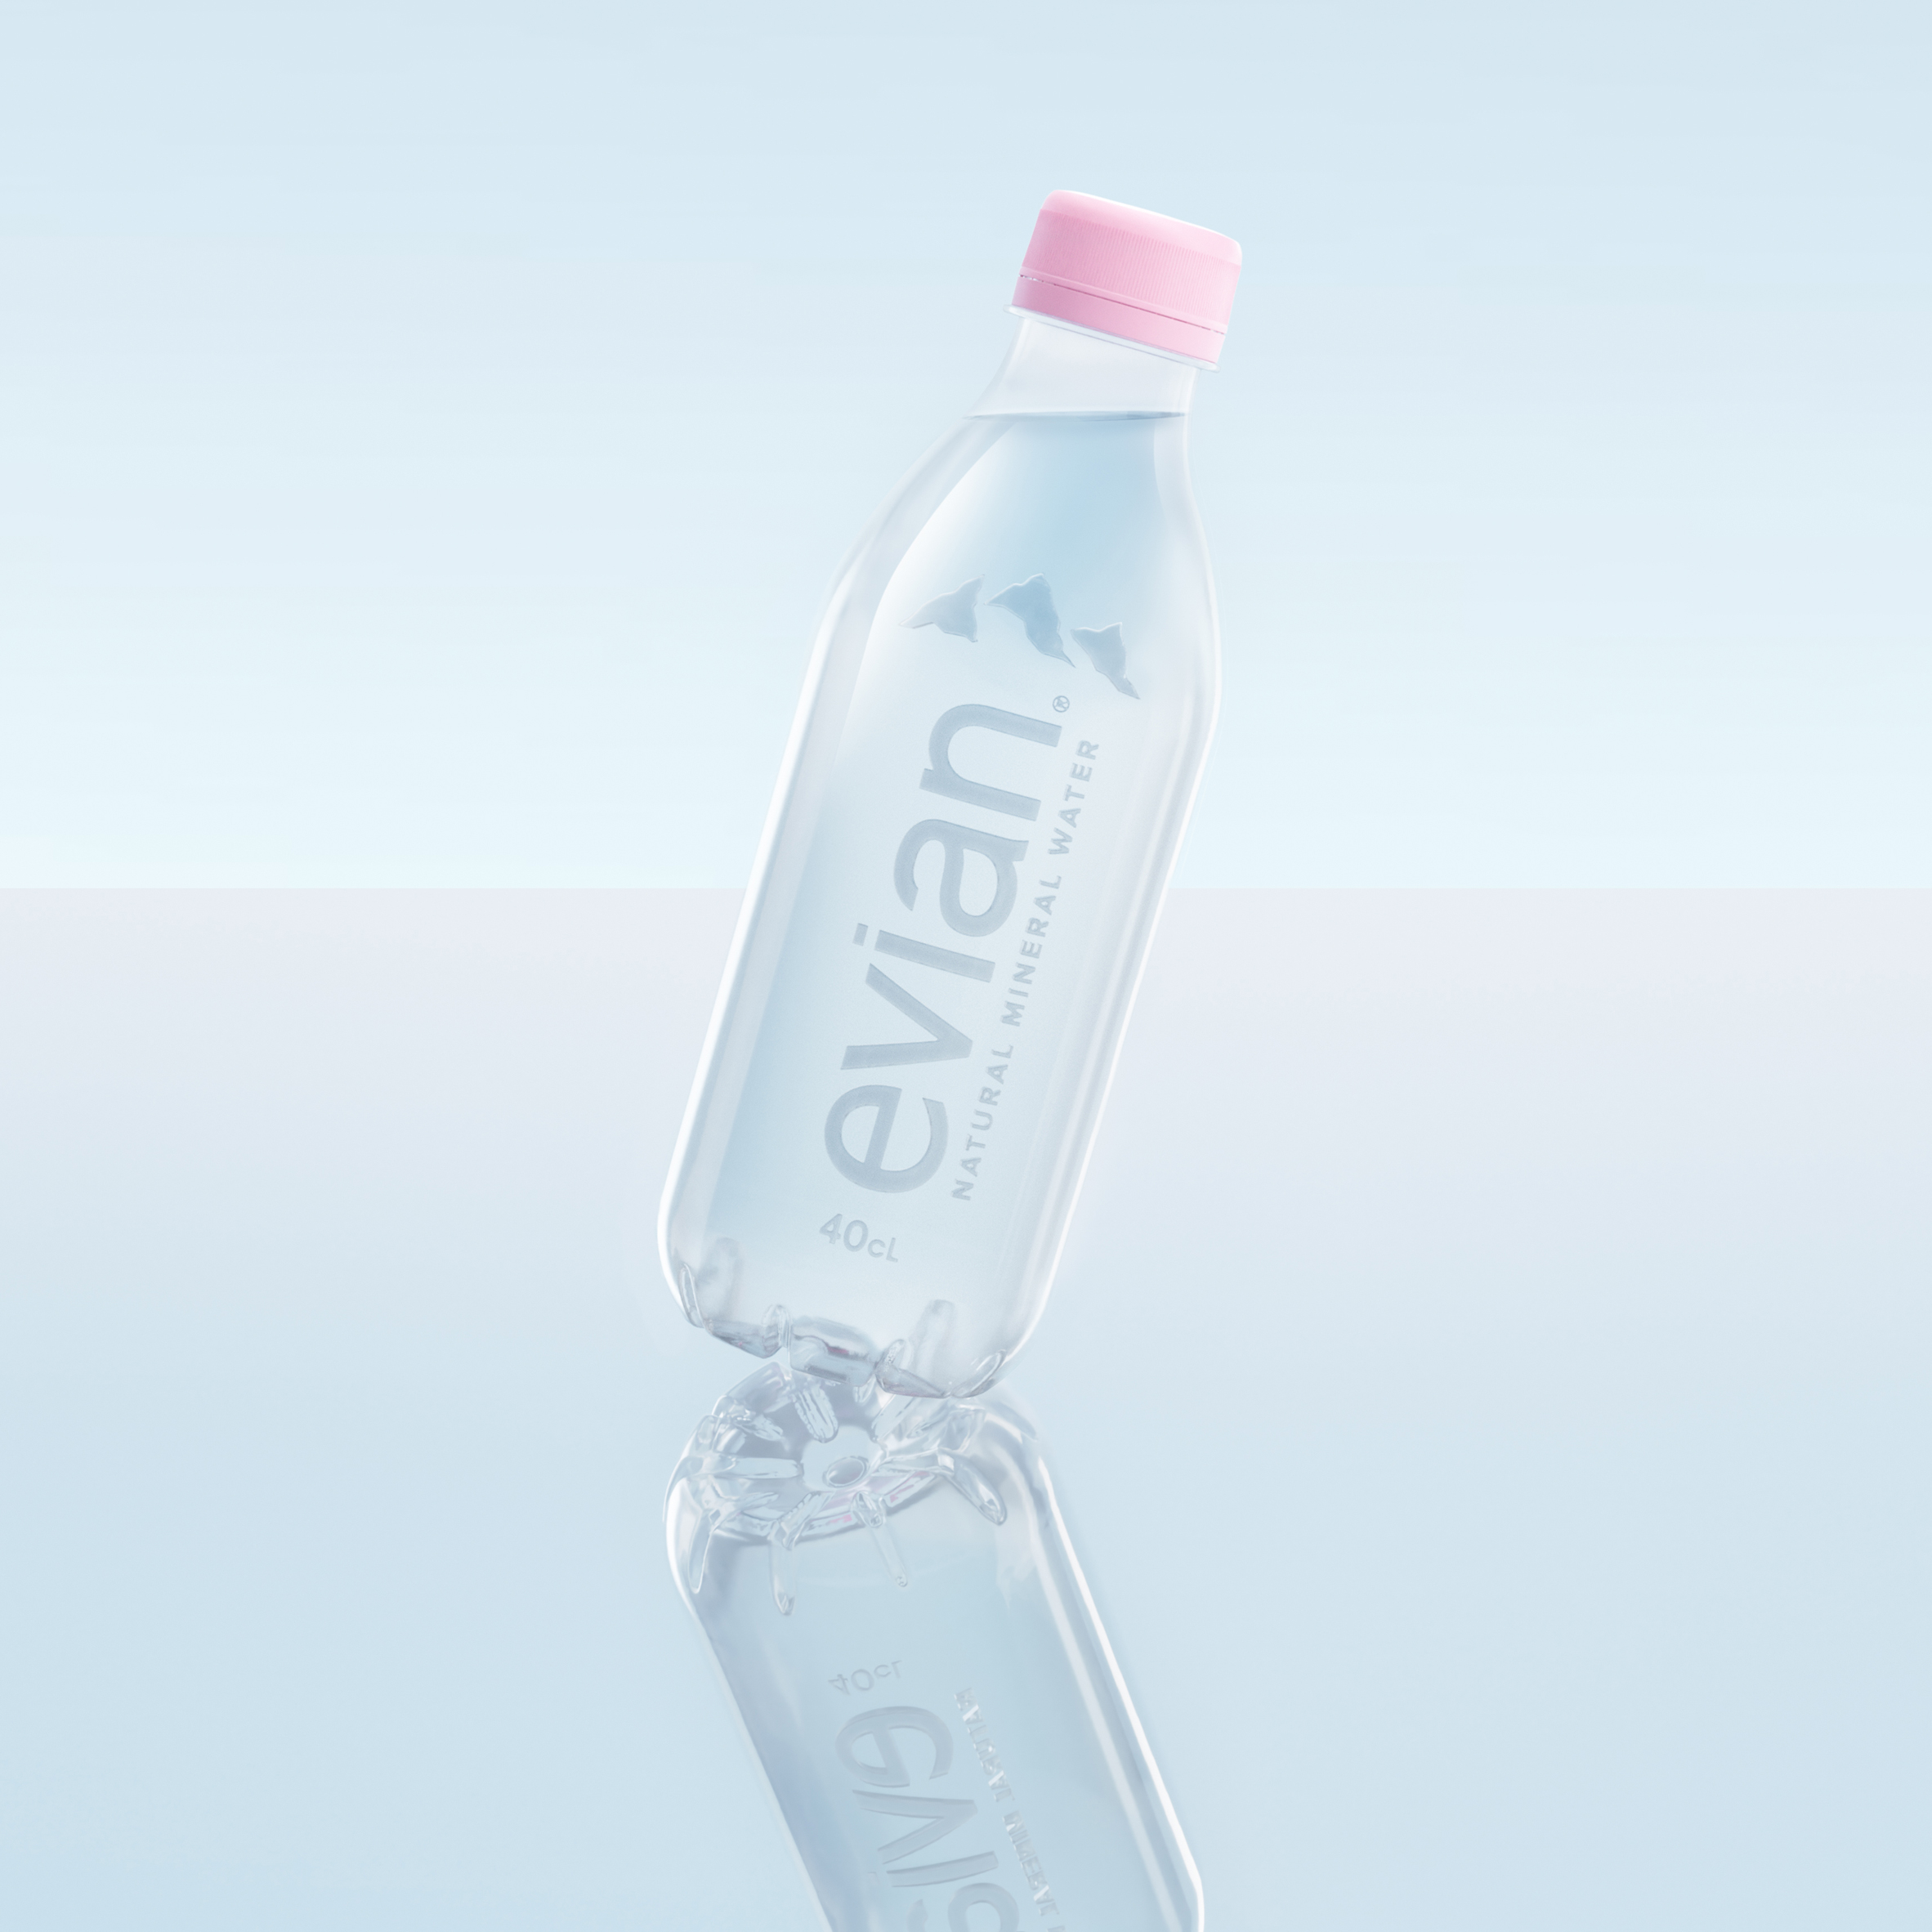 https://static.dezeen.com/uploads/2020/07/evian-label-free-water-bottle-design_dezeen_2364_sq-1.jpg